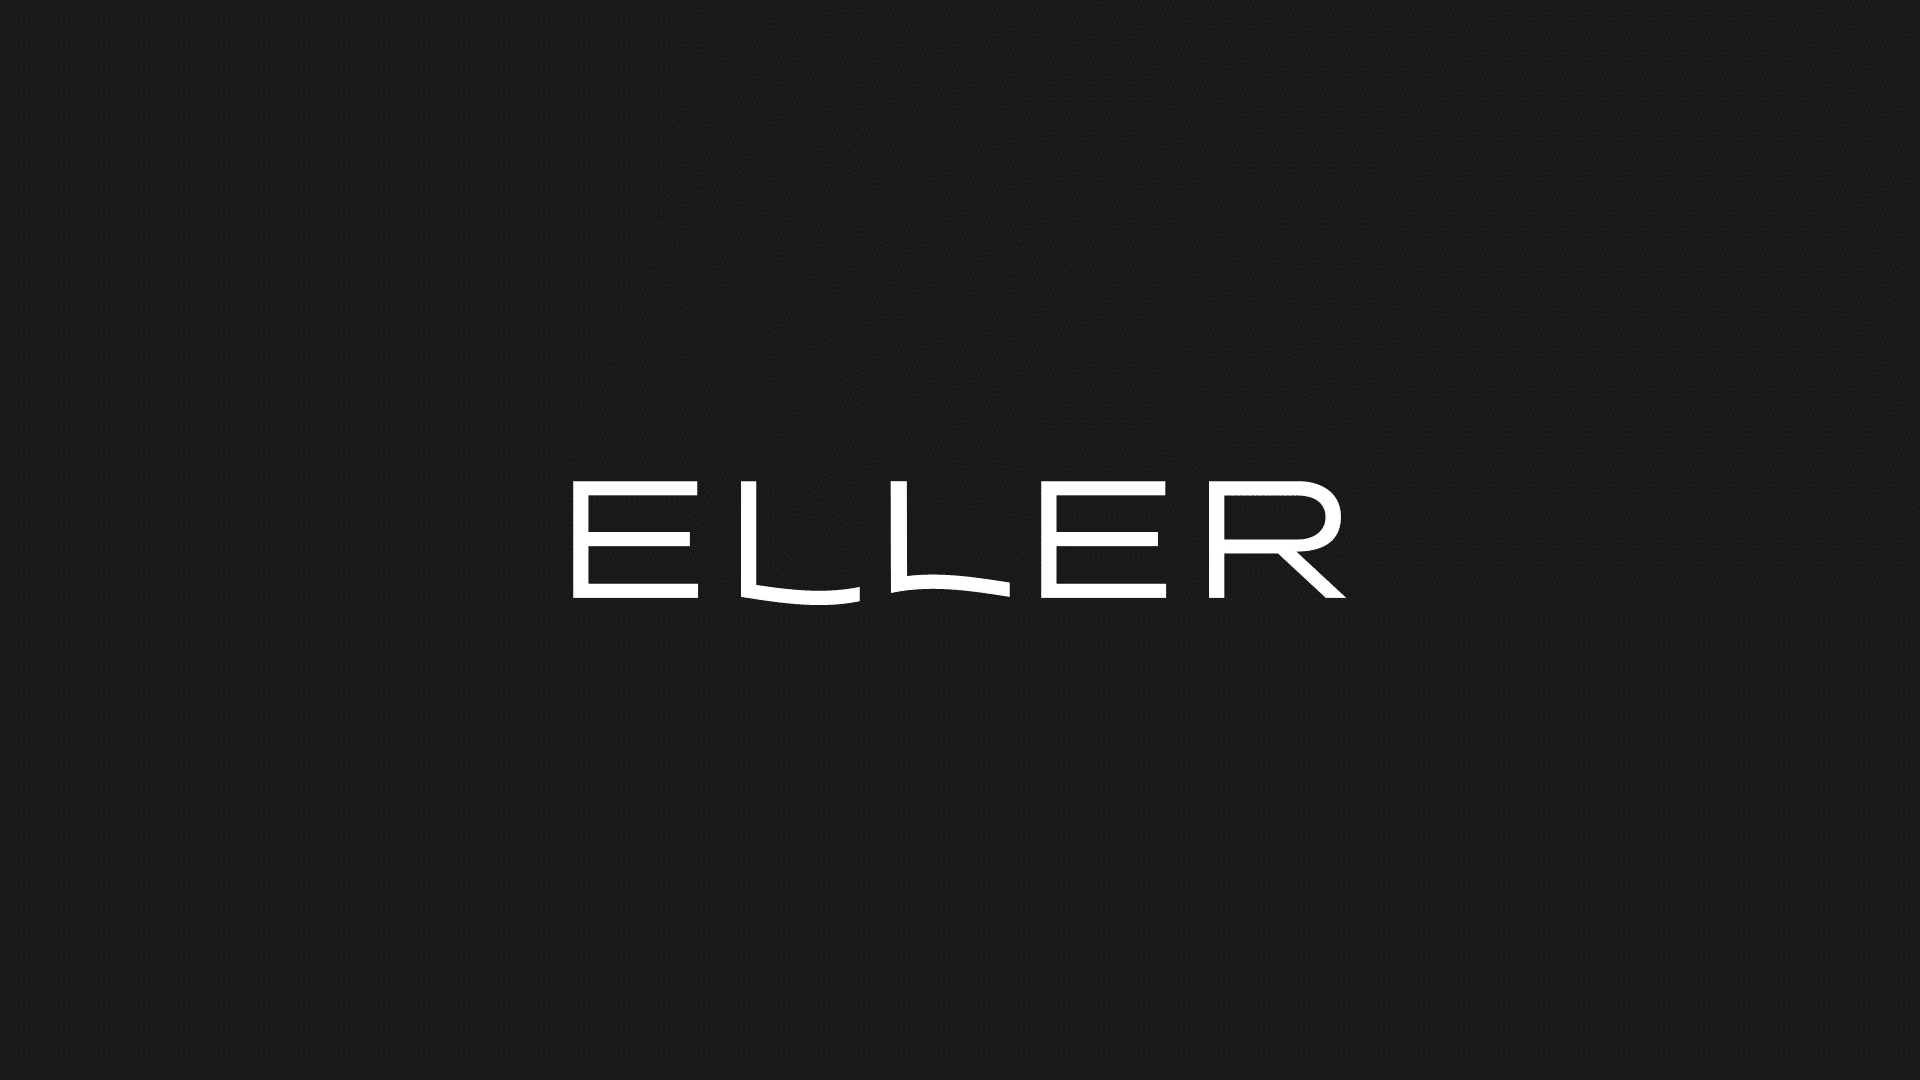 Diseño branding y logotipo de clinica estetica - Eller